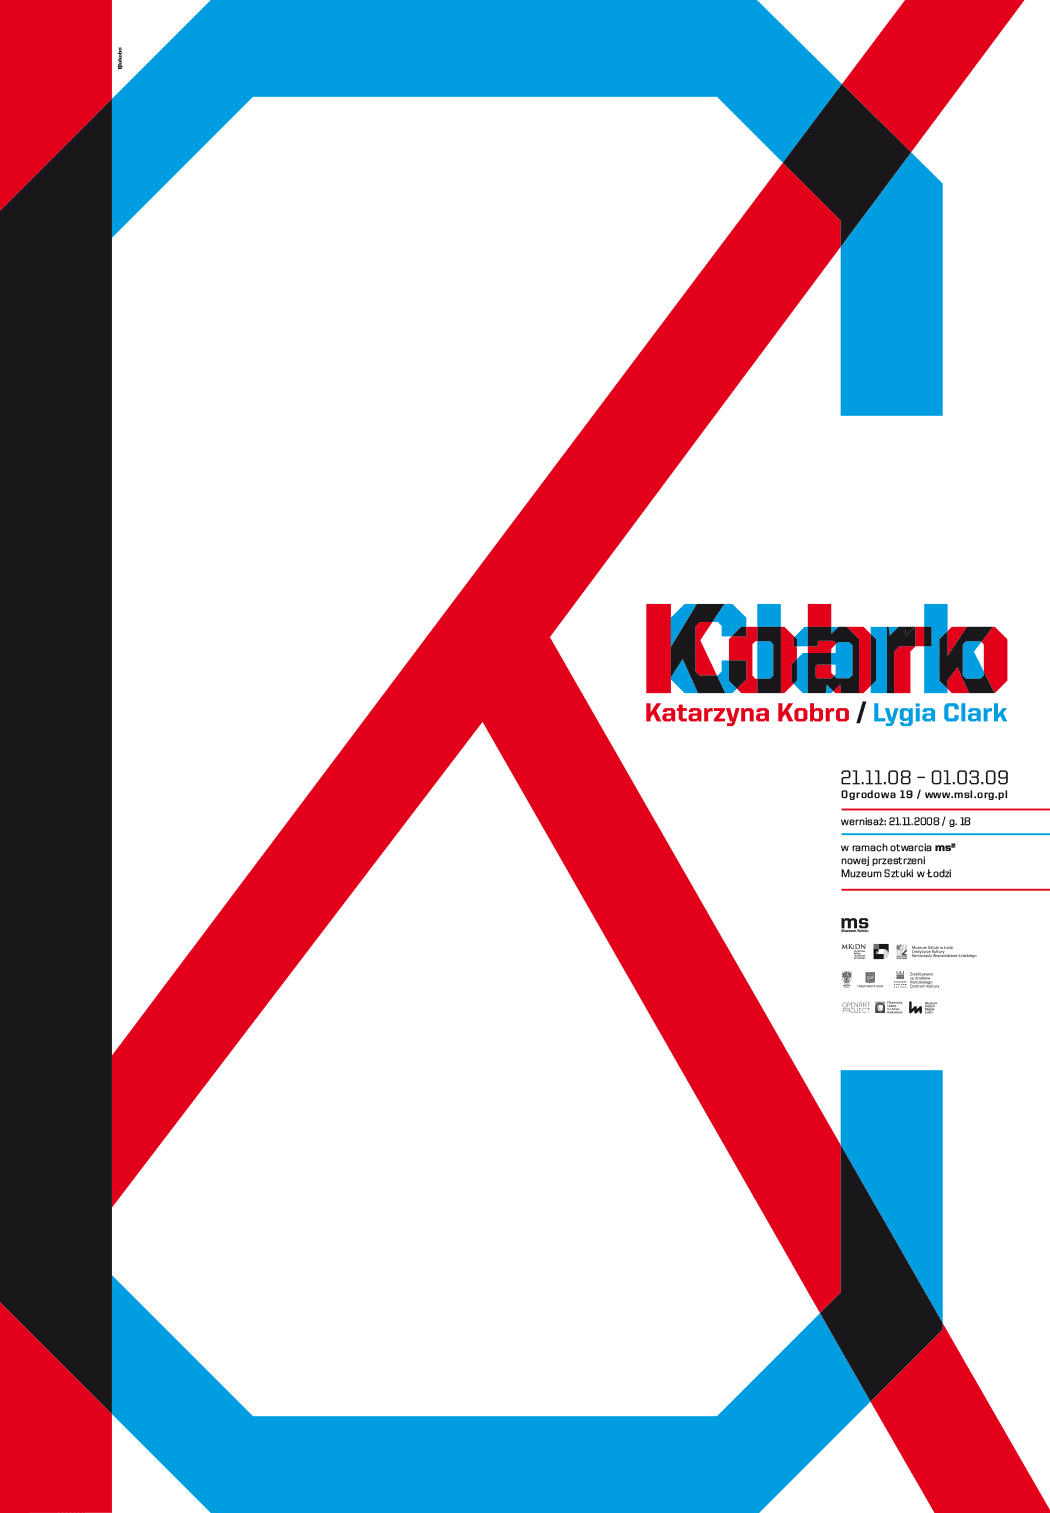 lidia-clark-katarzyna-kobro-muzeum-sztuki-lodz-id-exhibition-poster-design-hakobo-jakub-stepien-18